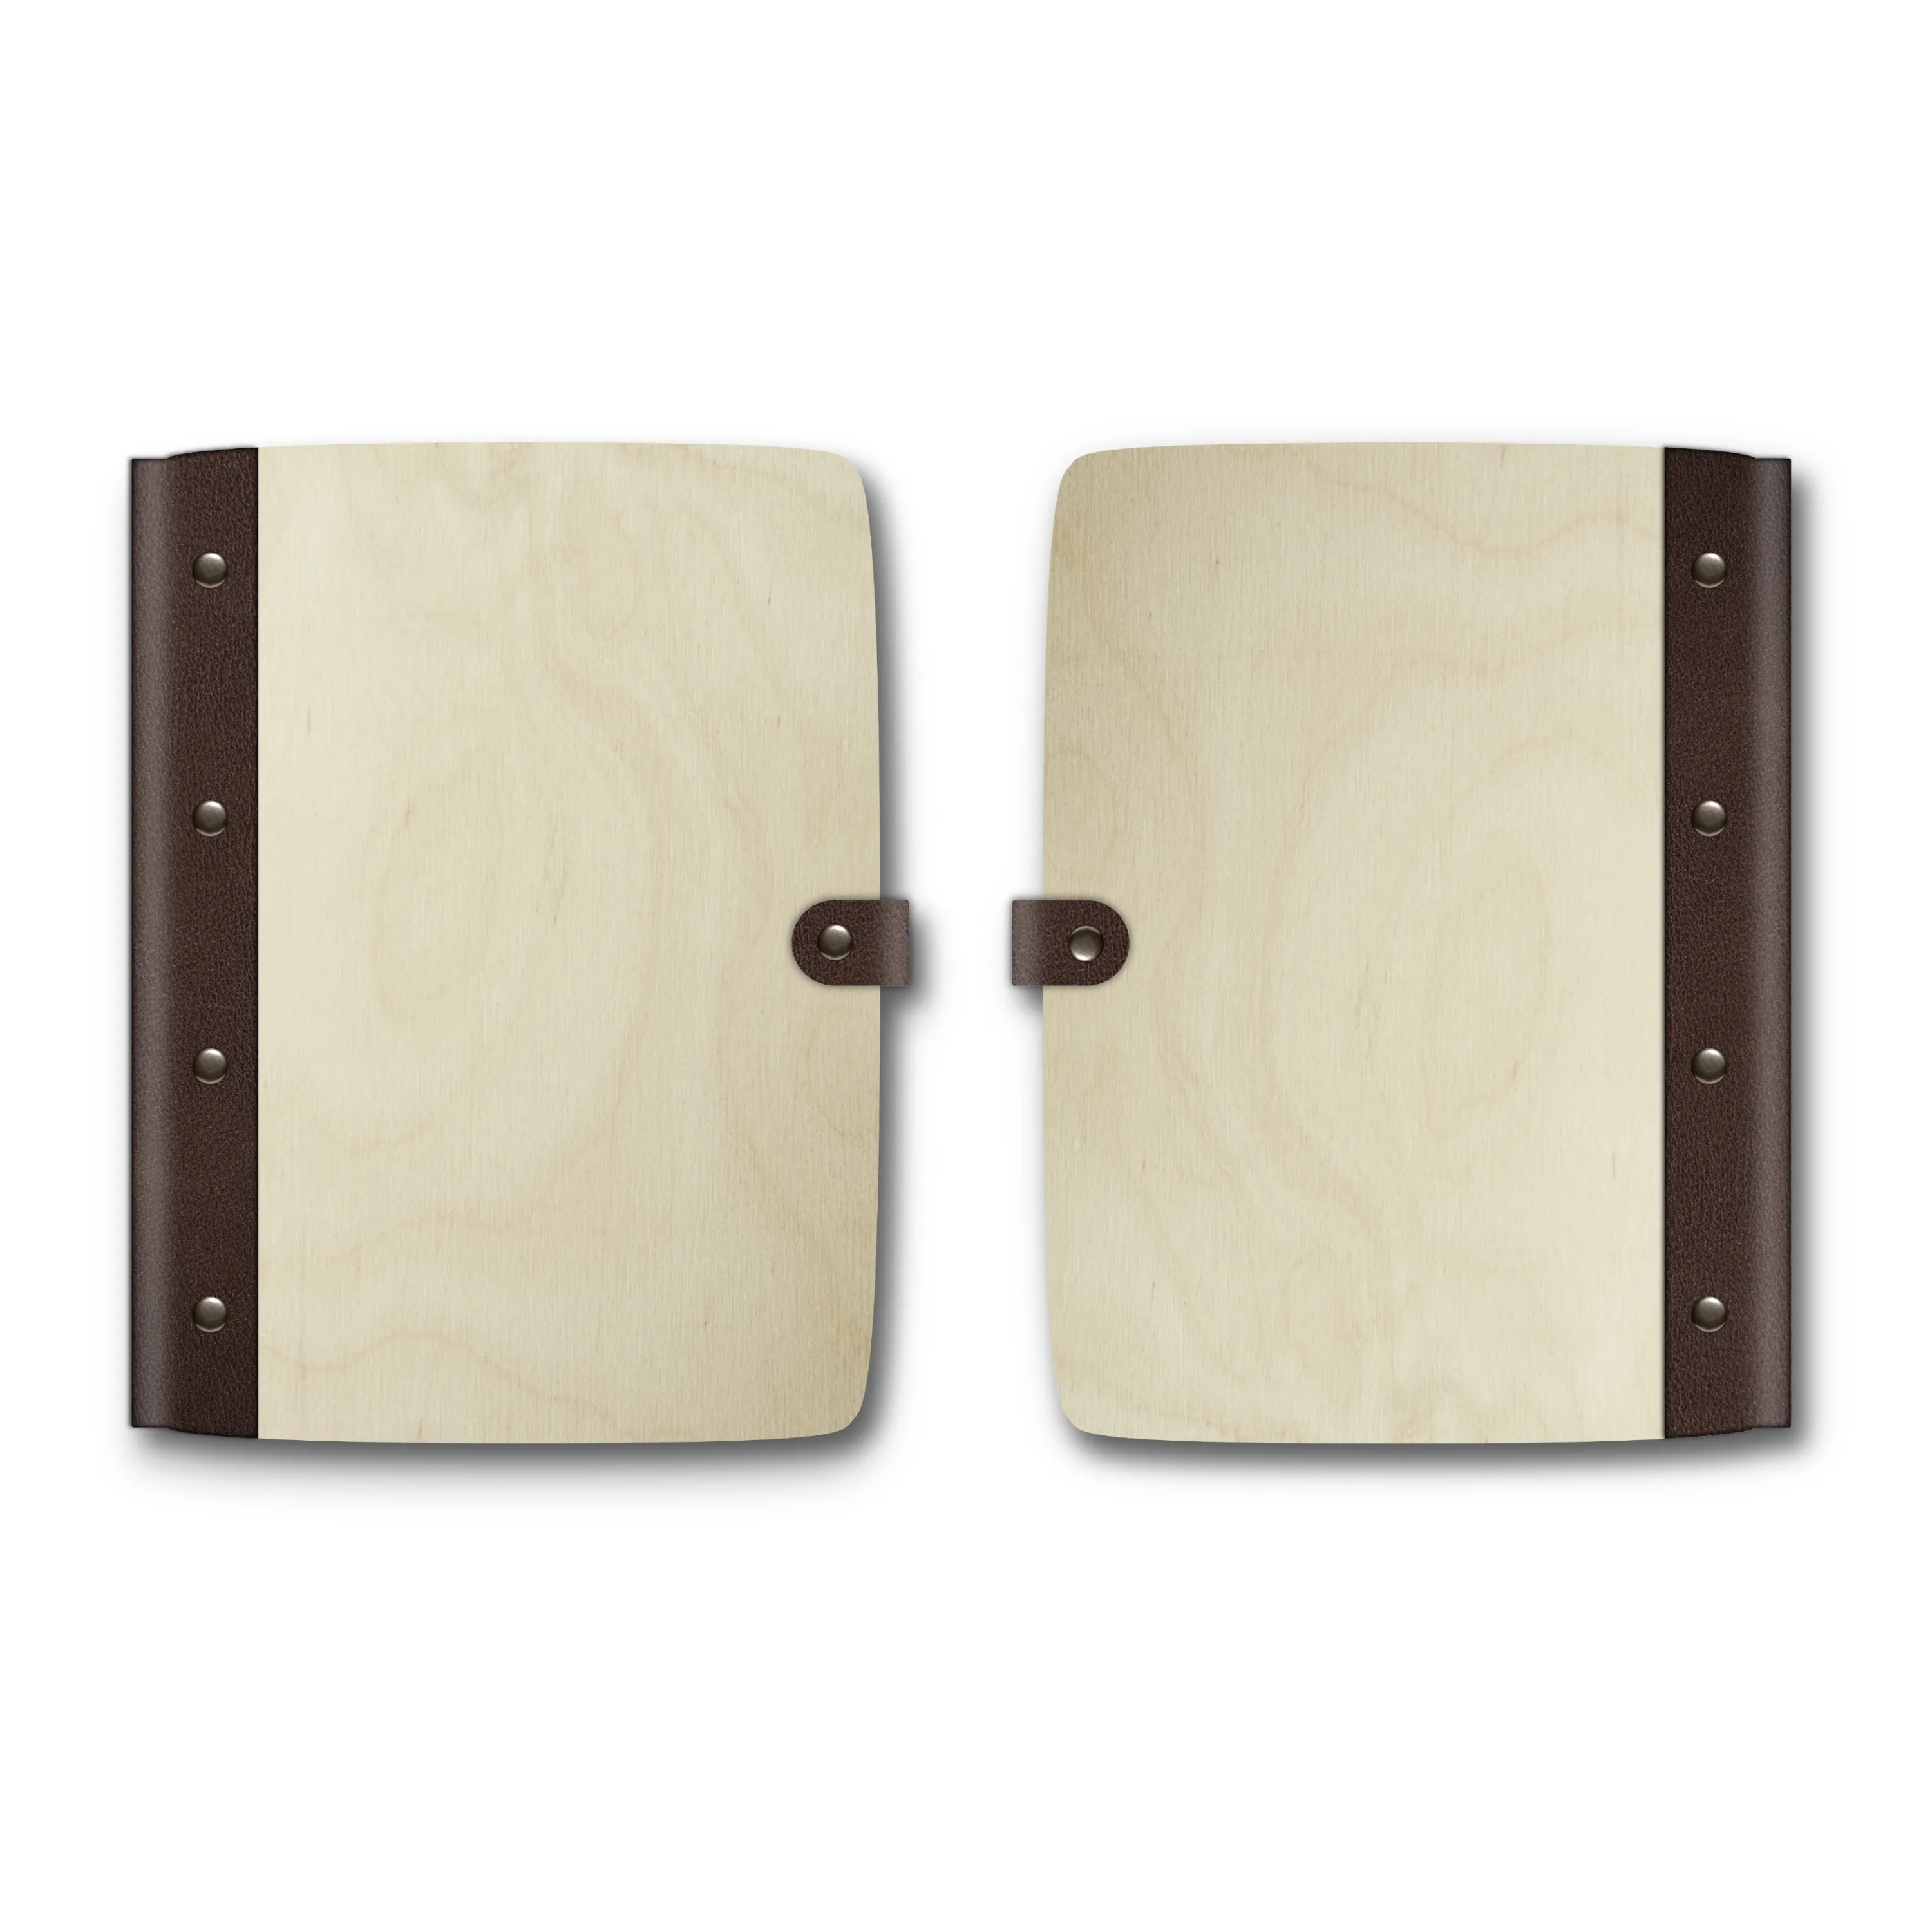 Personalisiertes Notizbuch Birkensperrholz mit Lederrücken - Eigene Gravurdatei hochladen